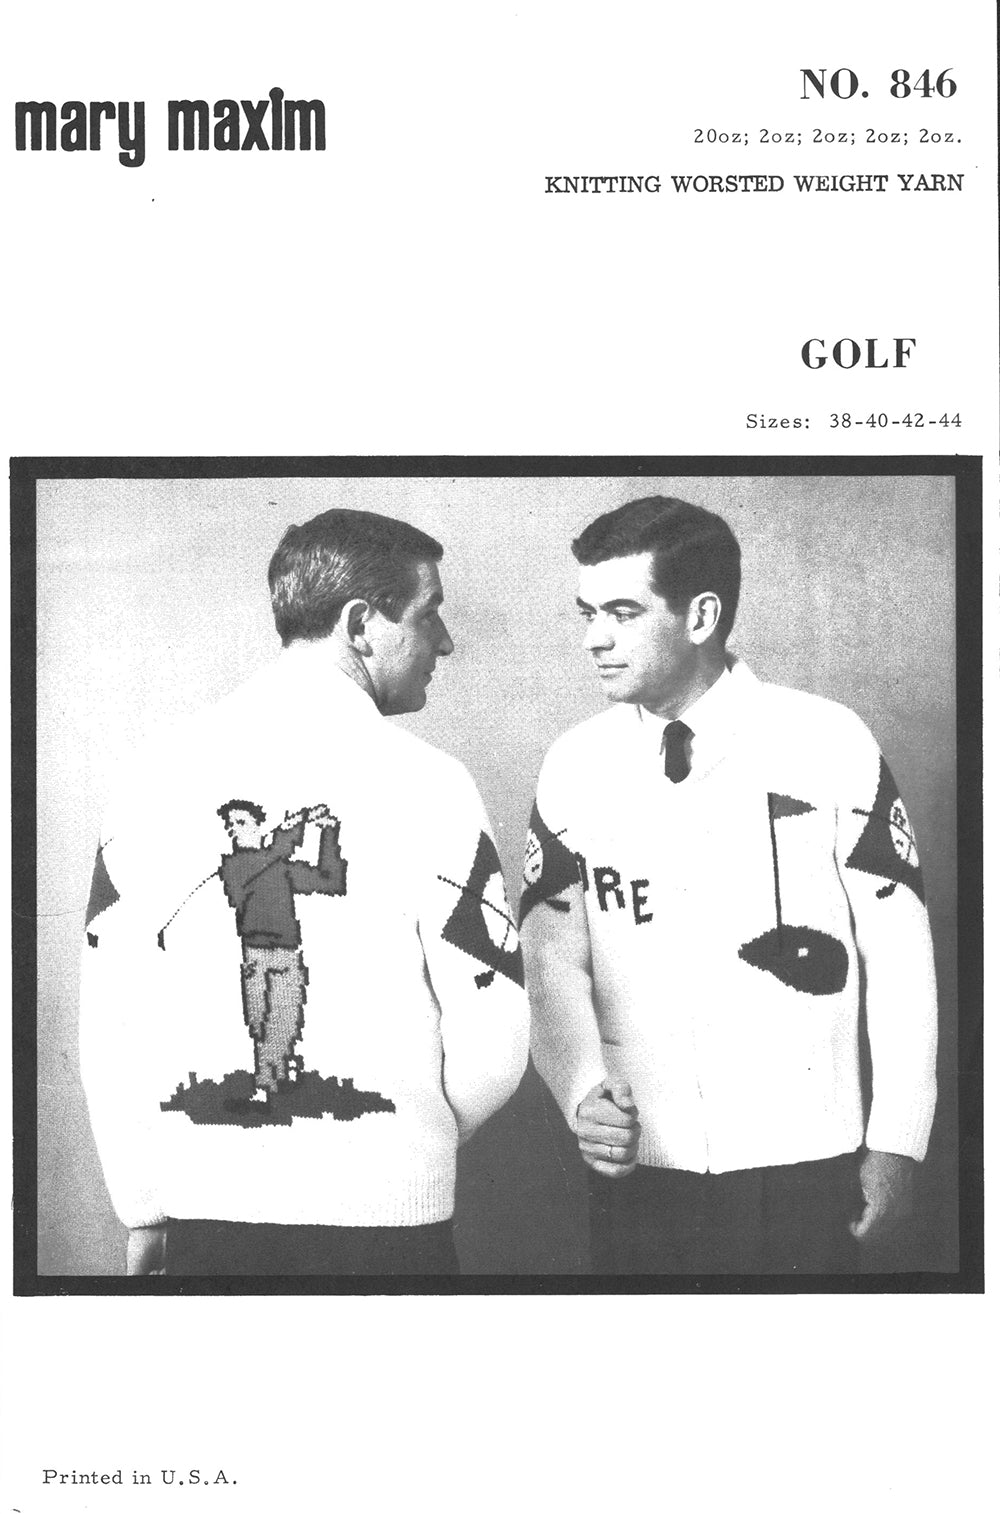 Modèle de cardigan de golf tricoté